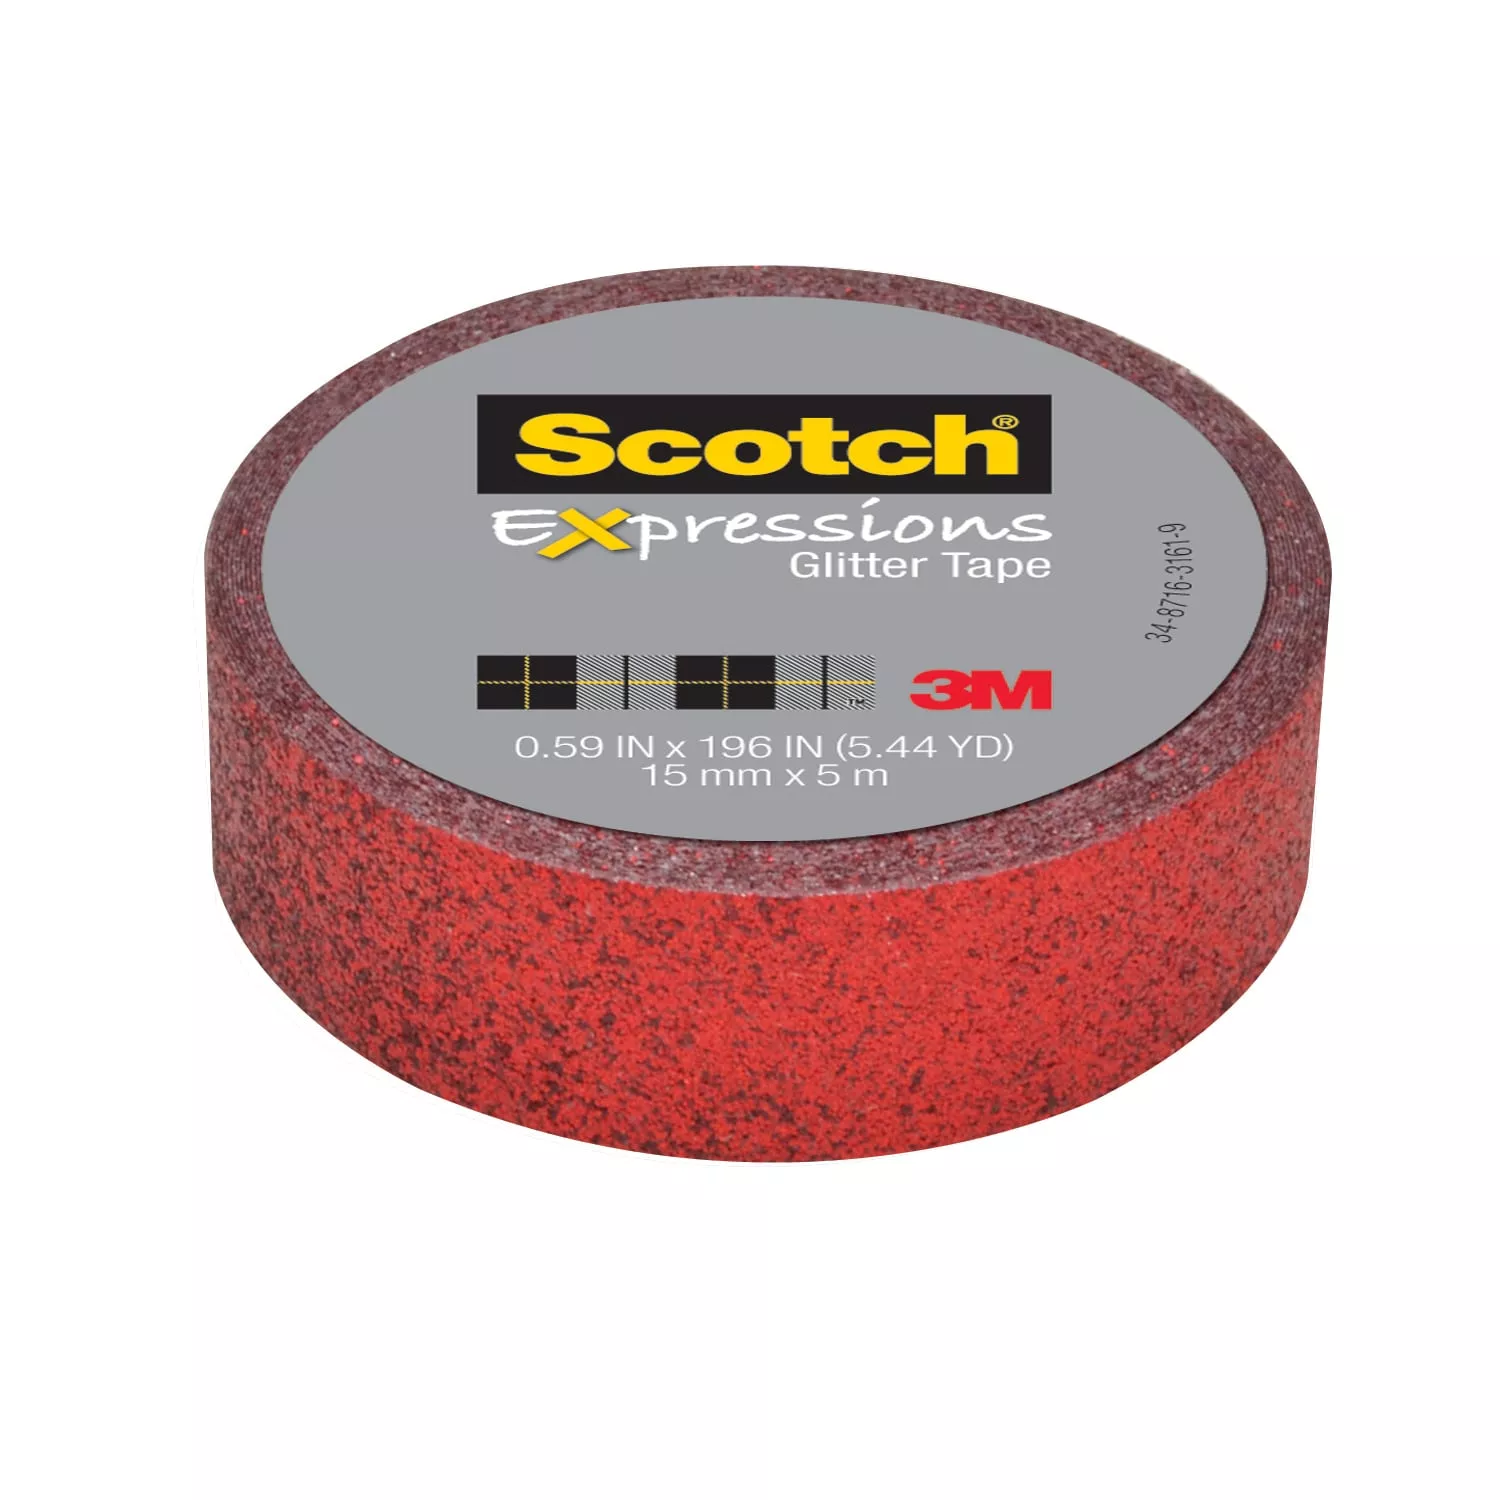 SKU 7100141793 | Scotch® Expressions Glitter Tape C514-RED